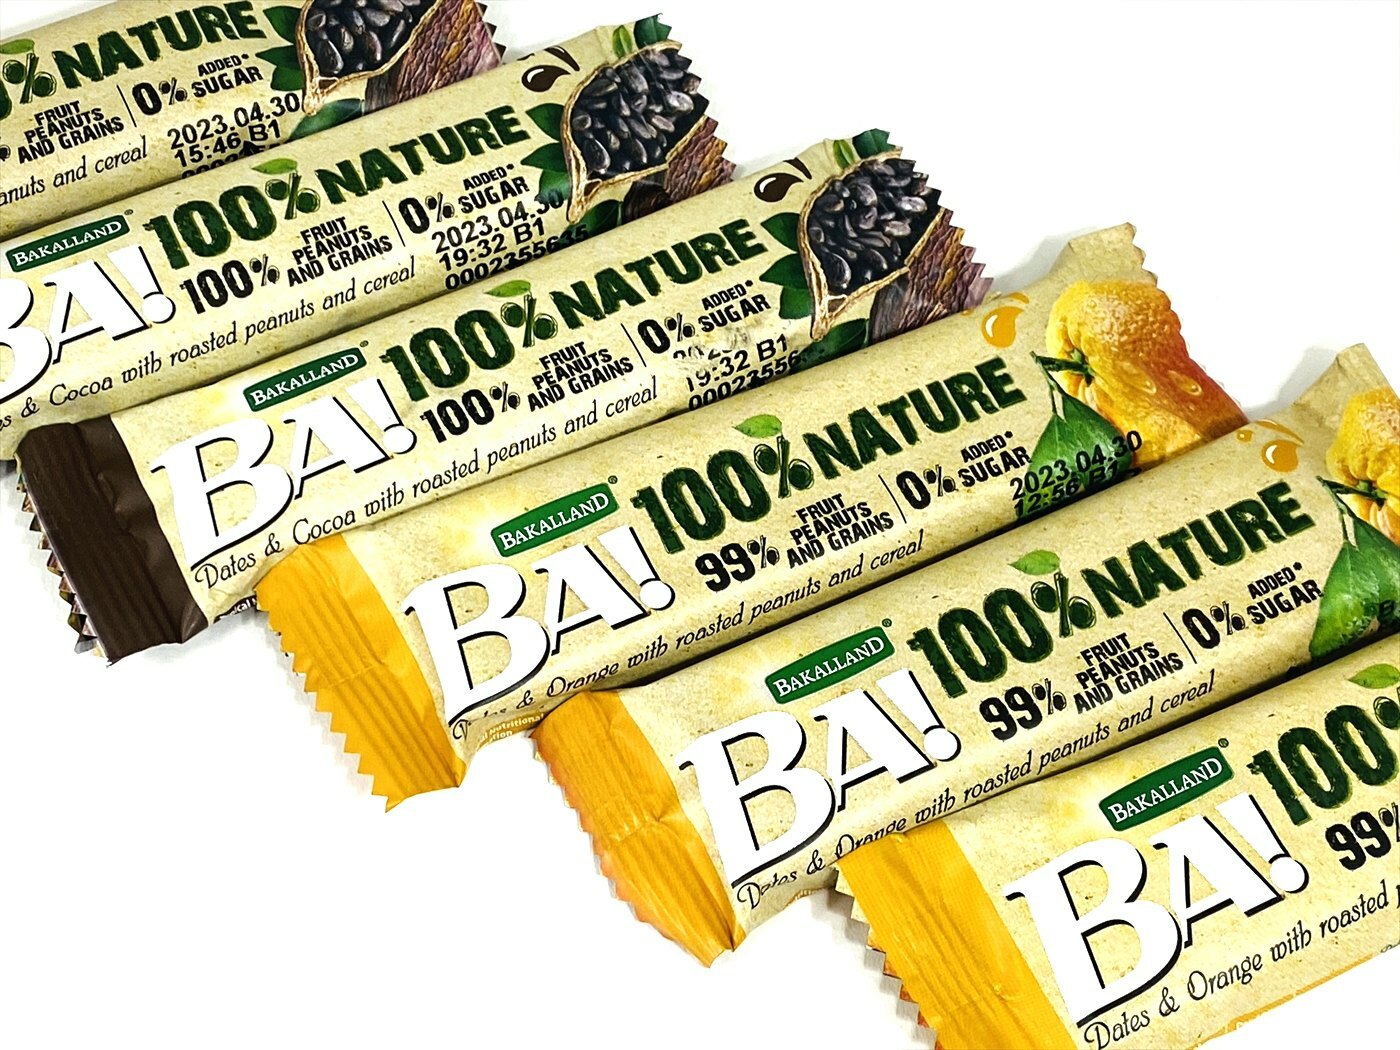 Bakalland BA! 100% Nature Fruit Bar